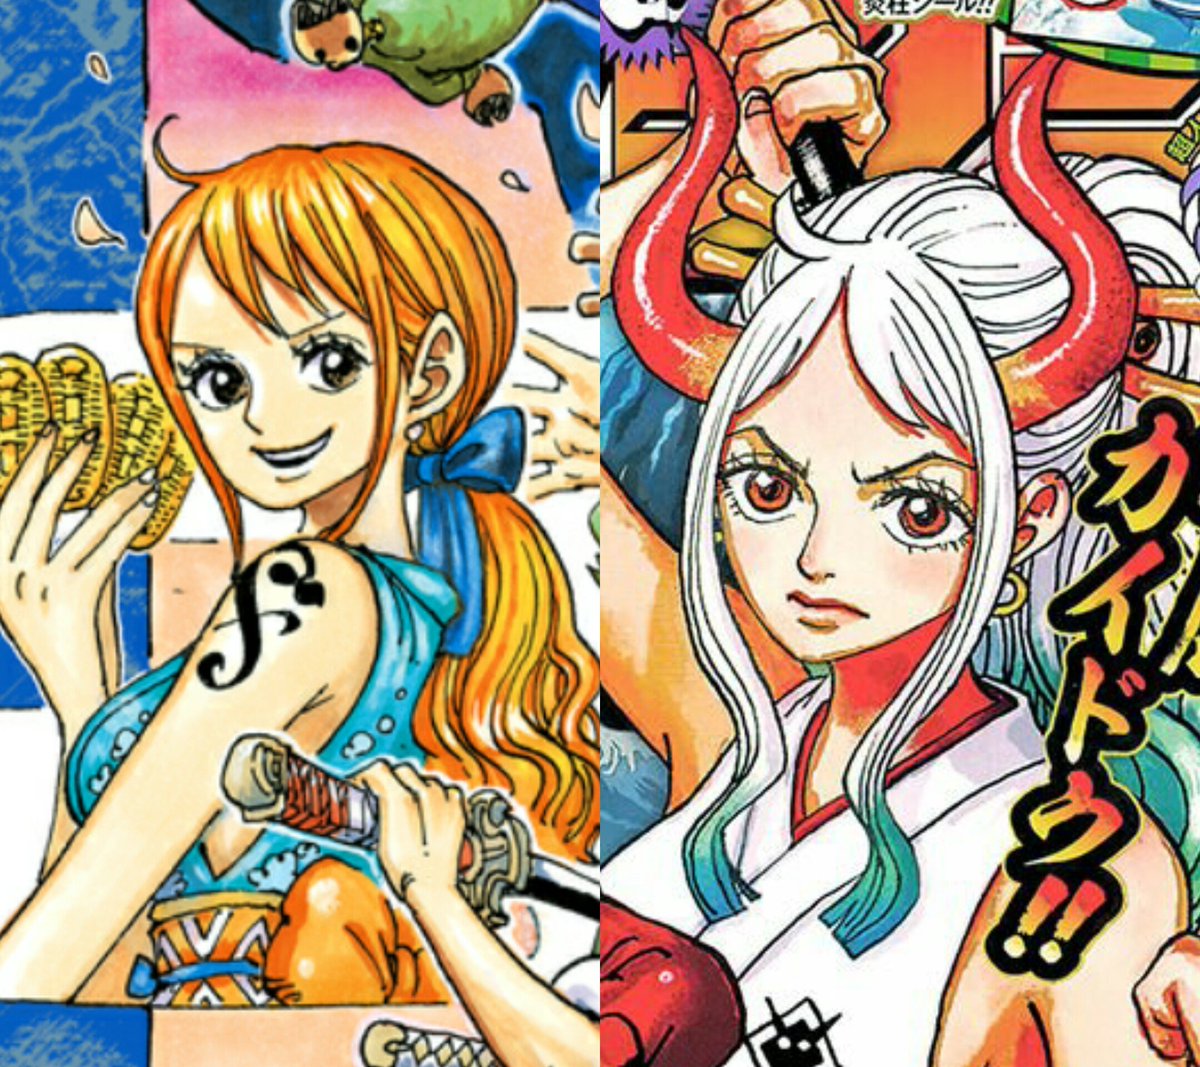 Bạn đã chỉ trích tác giả của One Piece? Hãy xem ảnh Luffy và Nami trong bộ truyện này để cảm nhận tình bạn, tình đồng đội chân thành giữa hai nhân vật này. Chắc chắn bạn sẽ có một cái nhìn khác về tác phẩm đầy tính cách thú vị này.